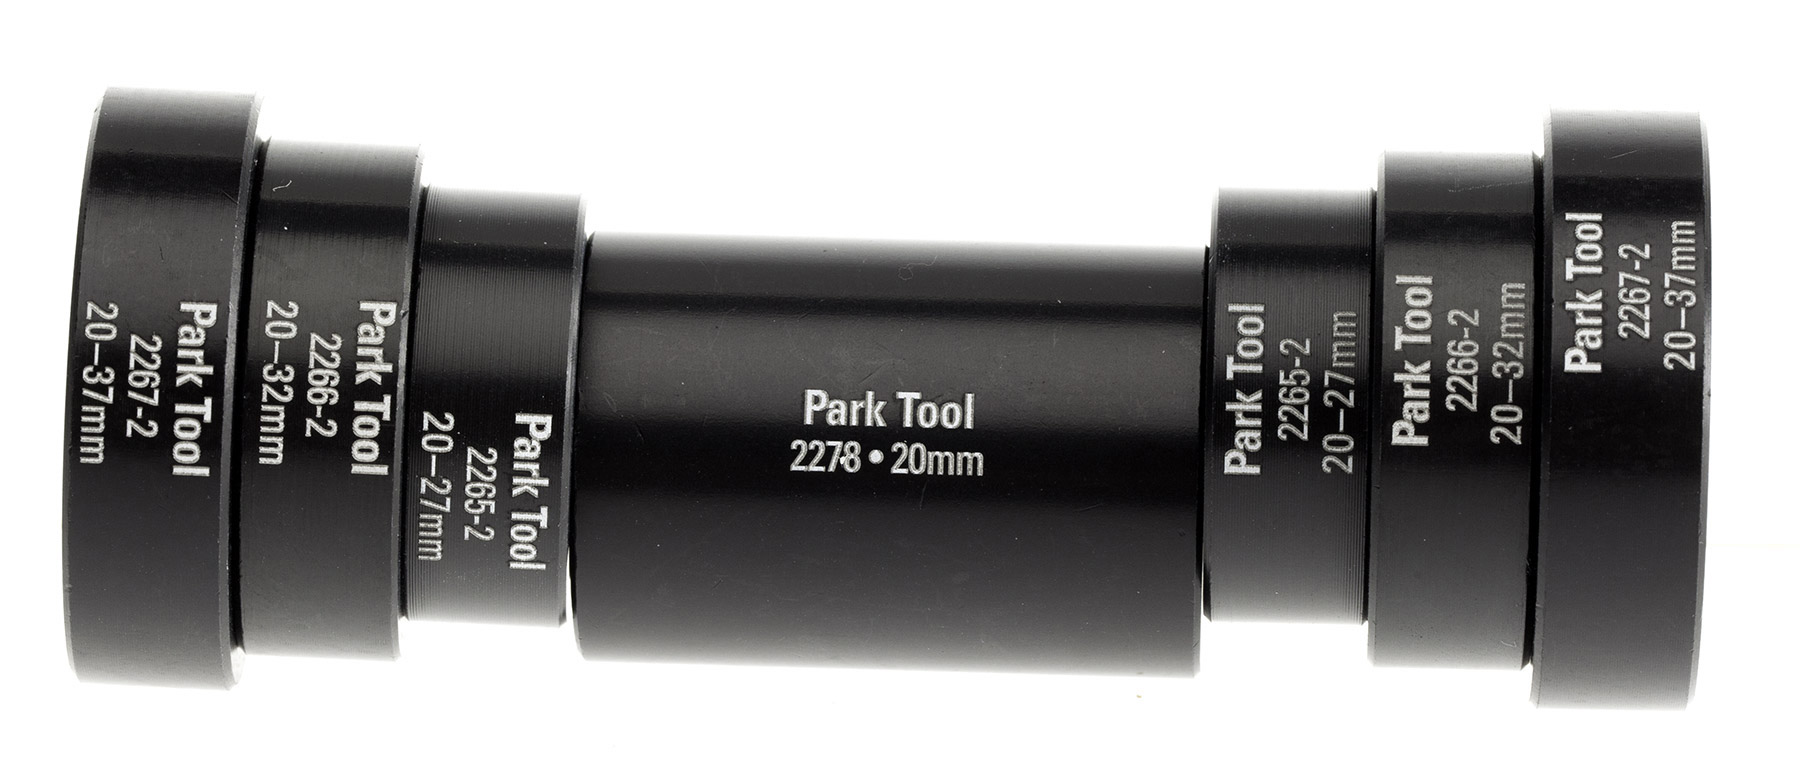 Park Tool Hbp-1 hub Roulement Press Set par Park